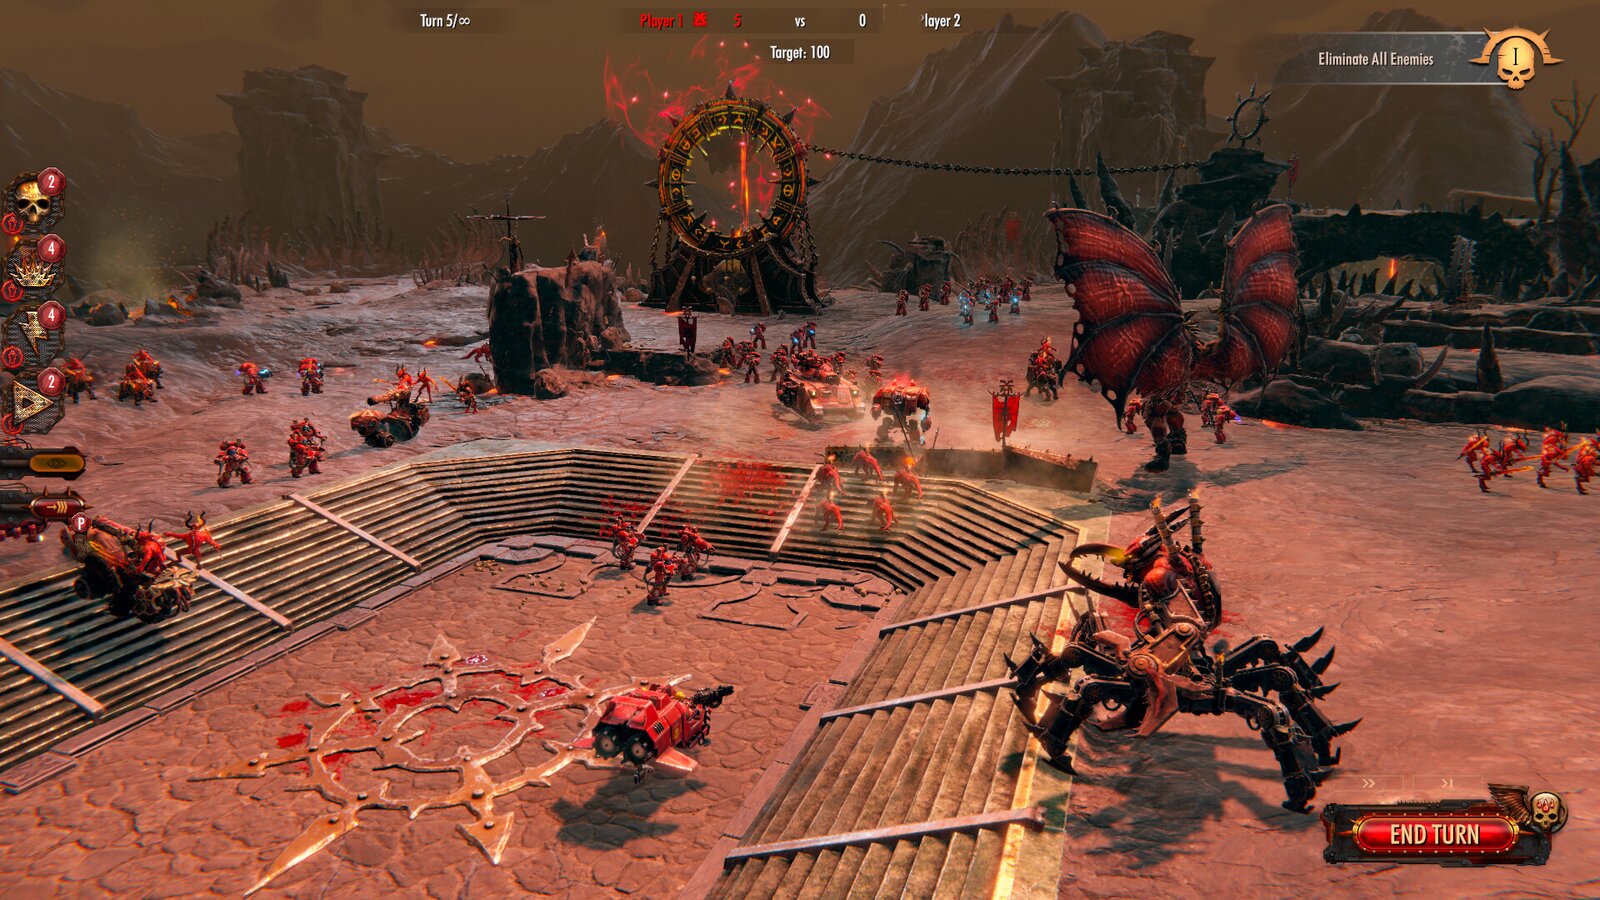 Warhammer 40,000: Battlesector - Daemons of Khorne